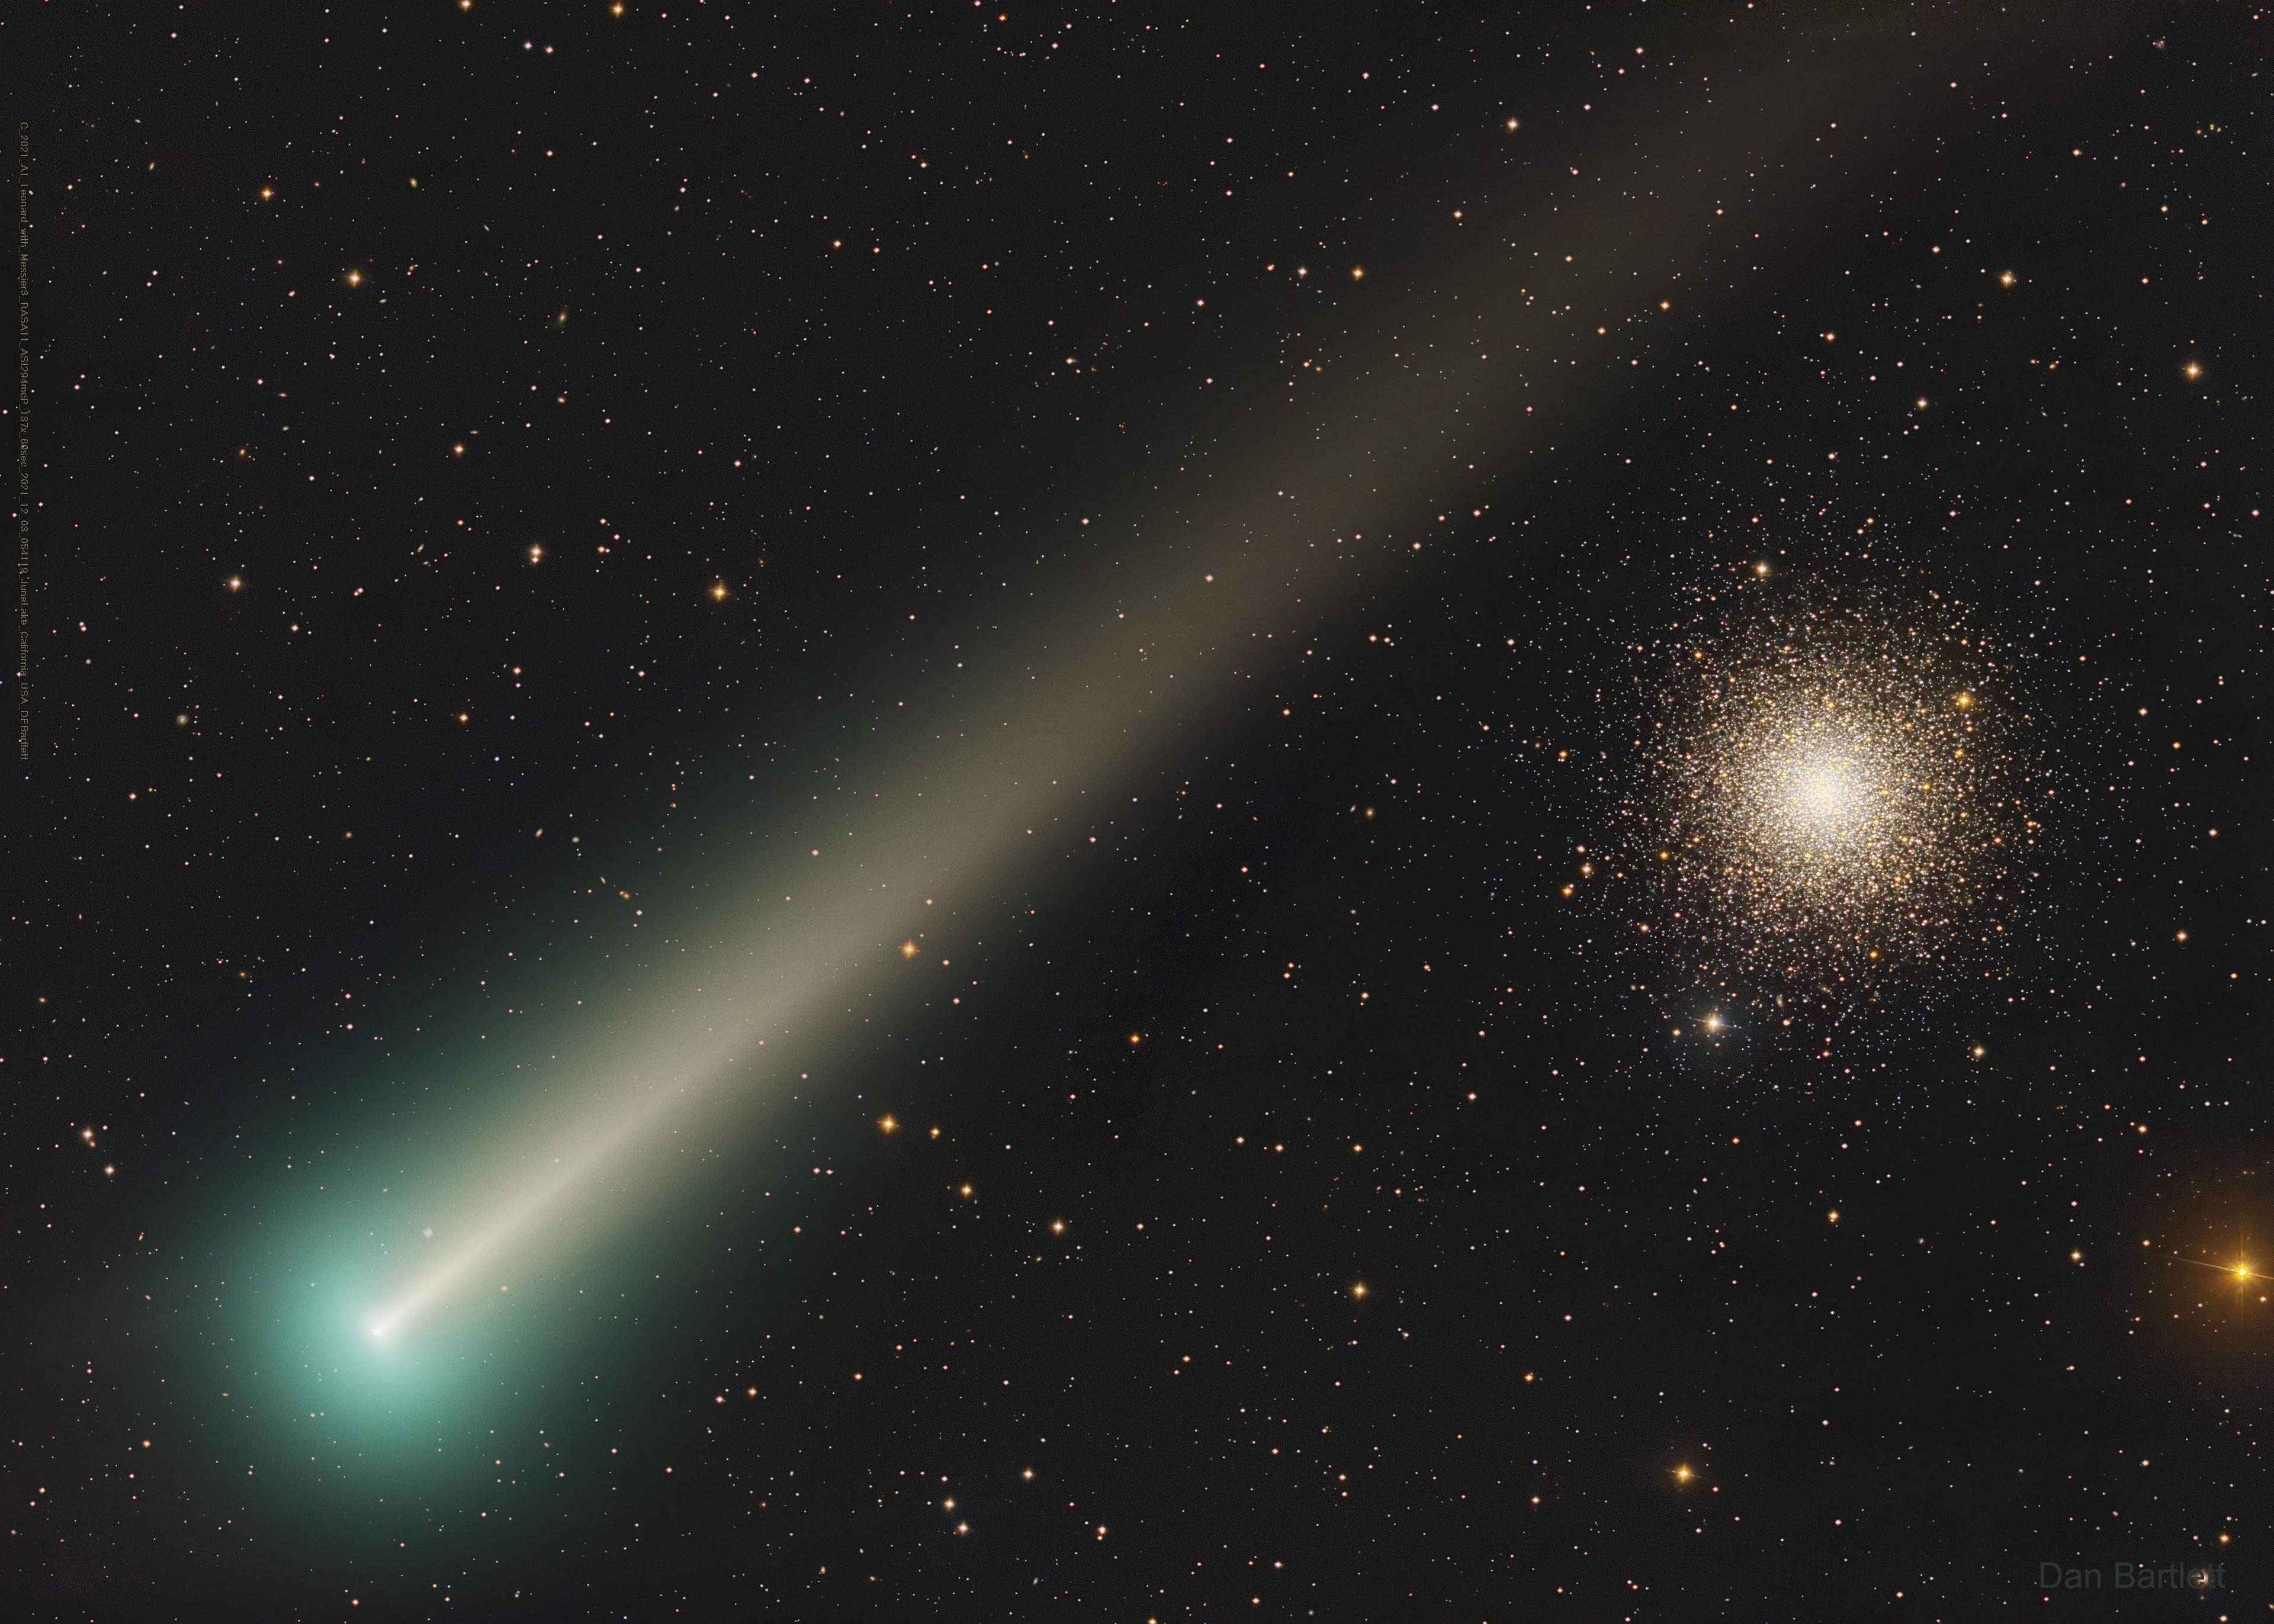 مذنّب ليونارد يسطع عبر قطر الصورة بذؤابته الخضراء أسفل اليسار وذيله الغباري وراءه، بينما يظهر خلفه أعلى اليمين العنقود النجمي م3 وتتزيّن السماء حوله بالنجوم.